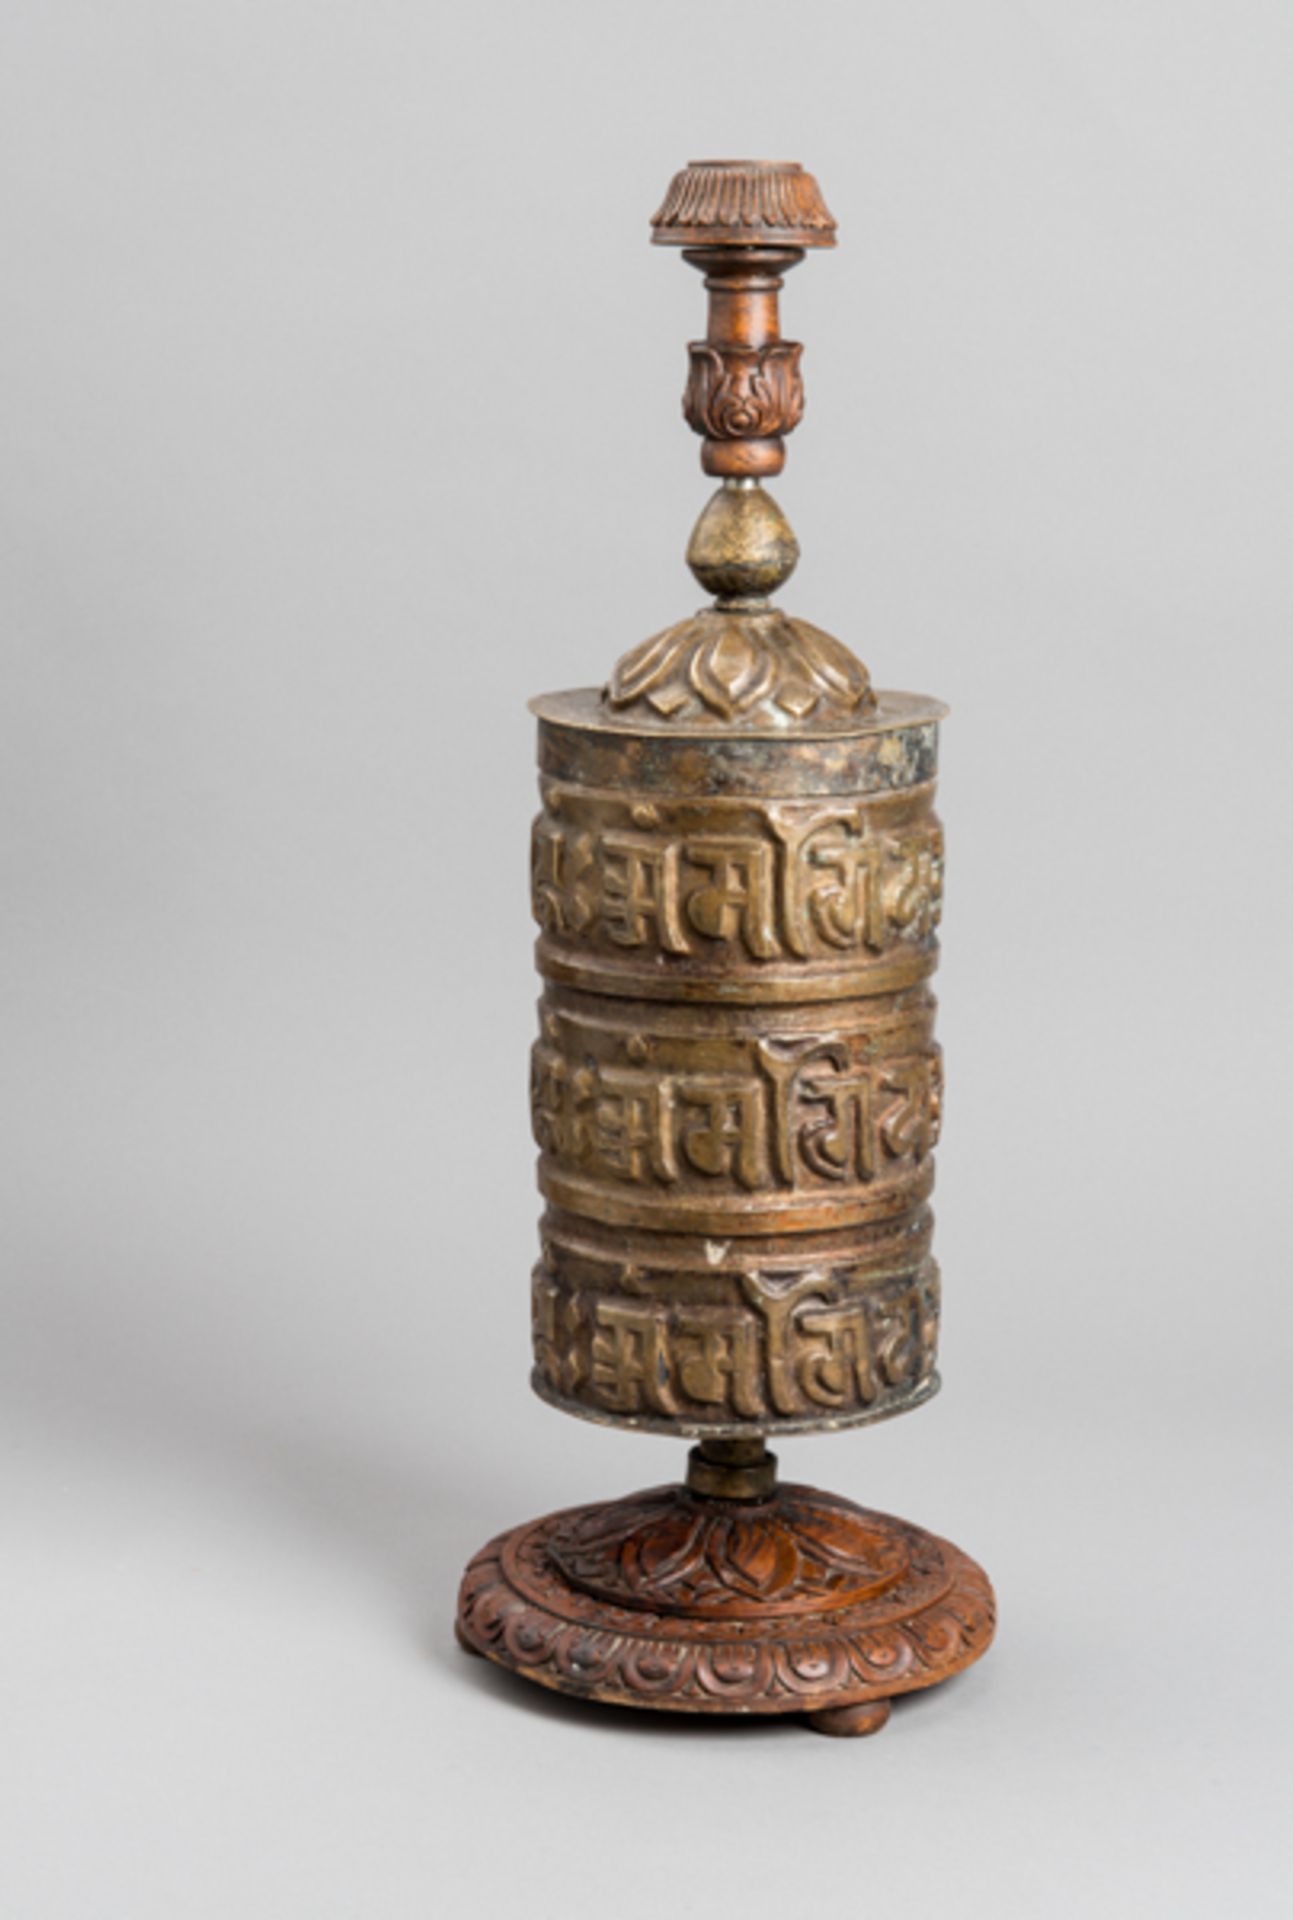 TIBETISCHE GEBETSMÜHLE
Messing und Holz. Indien, Wirkungsvoll gestaltetes Stück, die Gebetsmühle